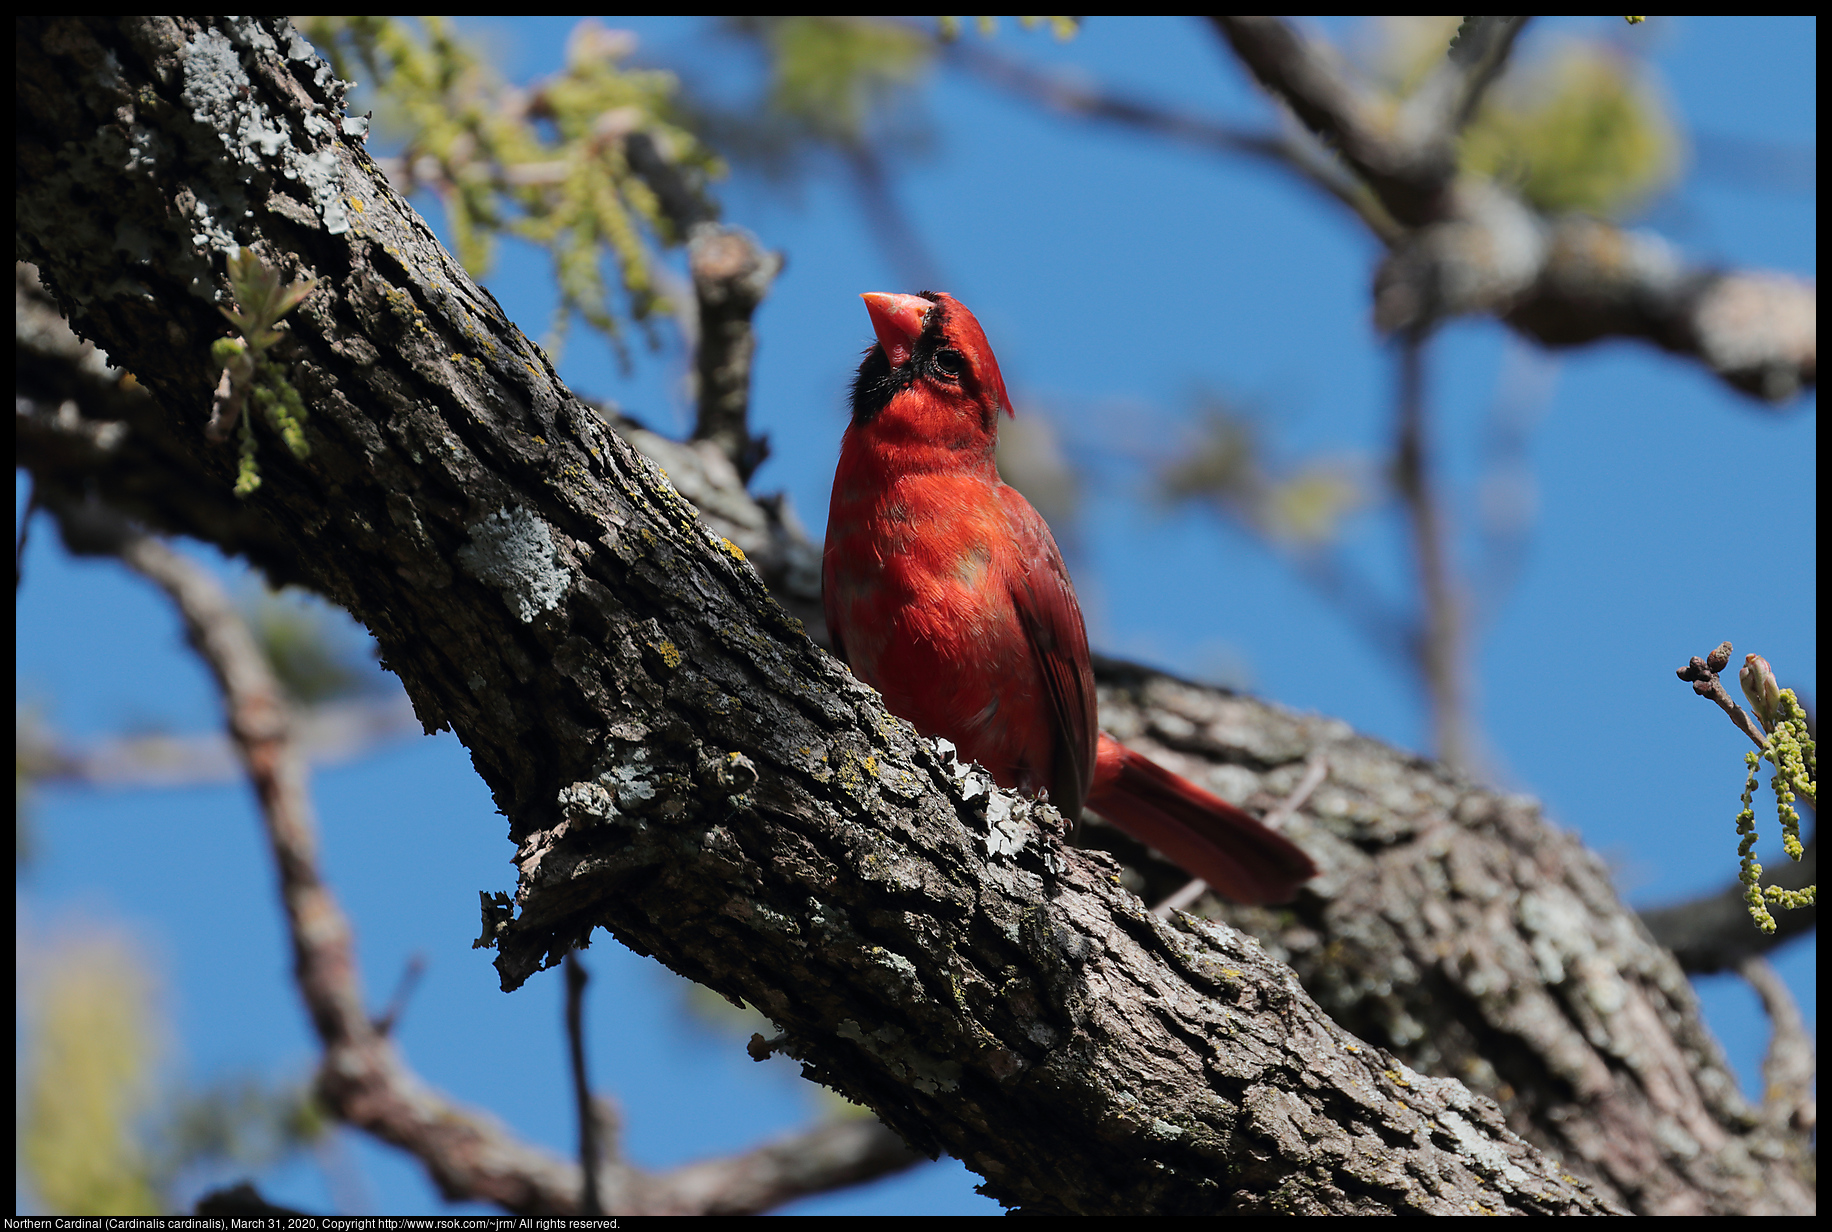 Northern Cardinal (Cardinalis cardinalis), March 31, 2020